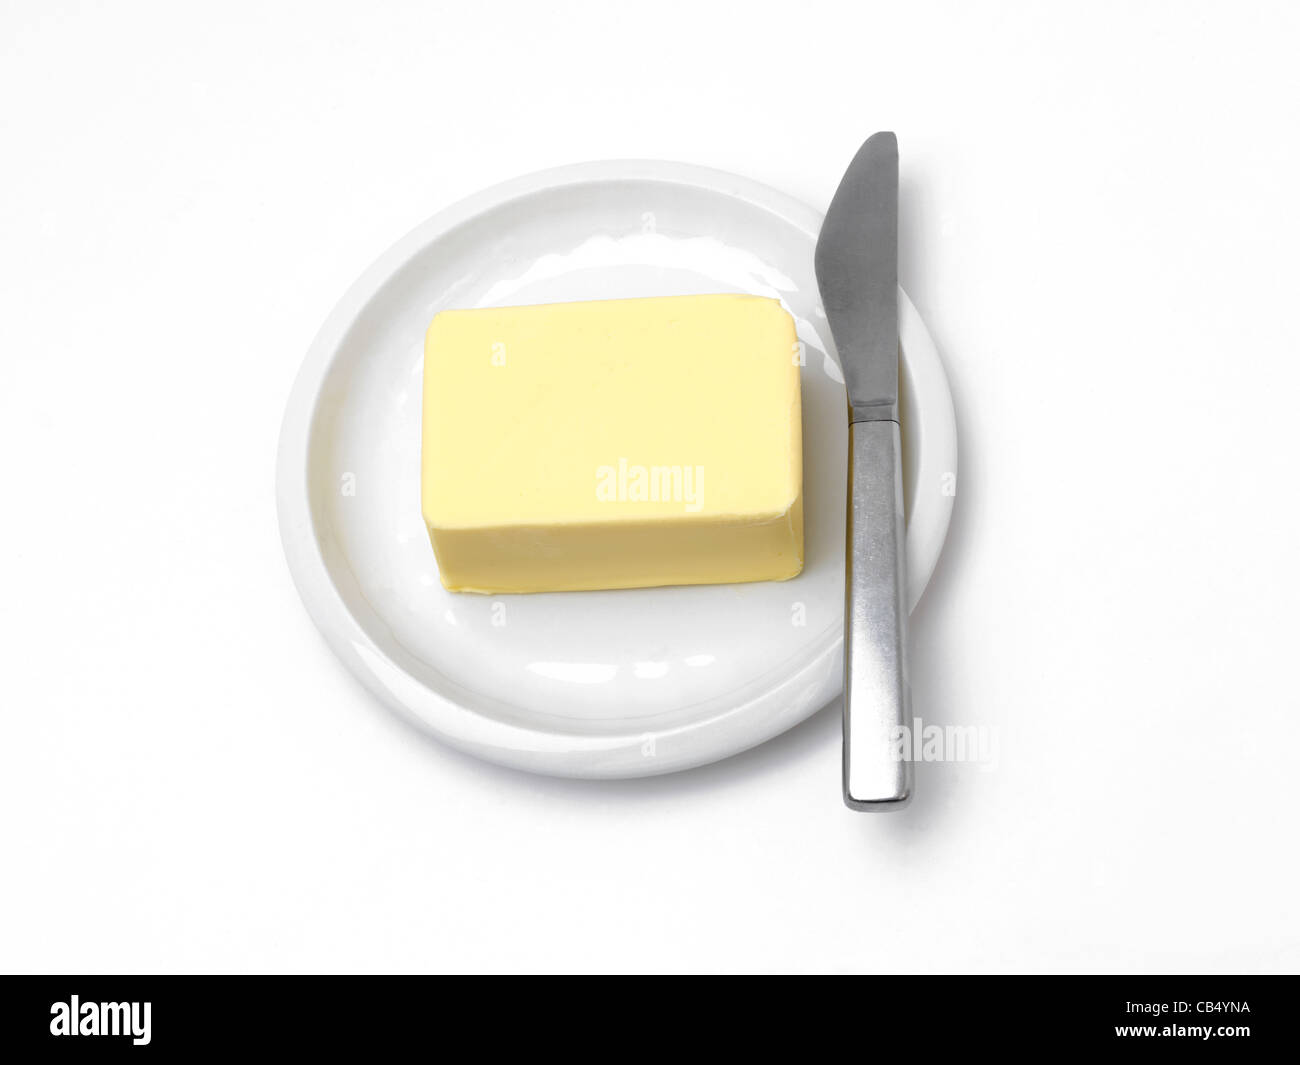 Bloque de mantequilla en un plato con un cuchillo por el lateral Foto de stock